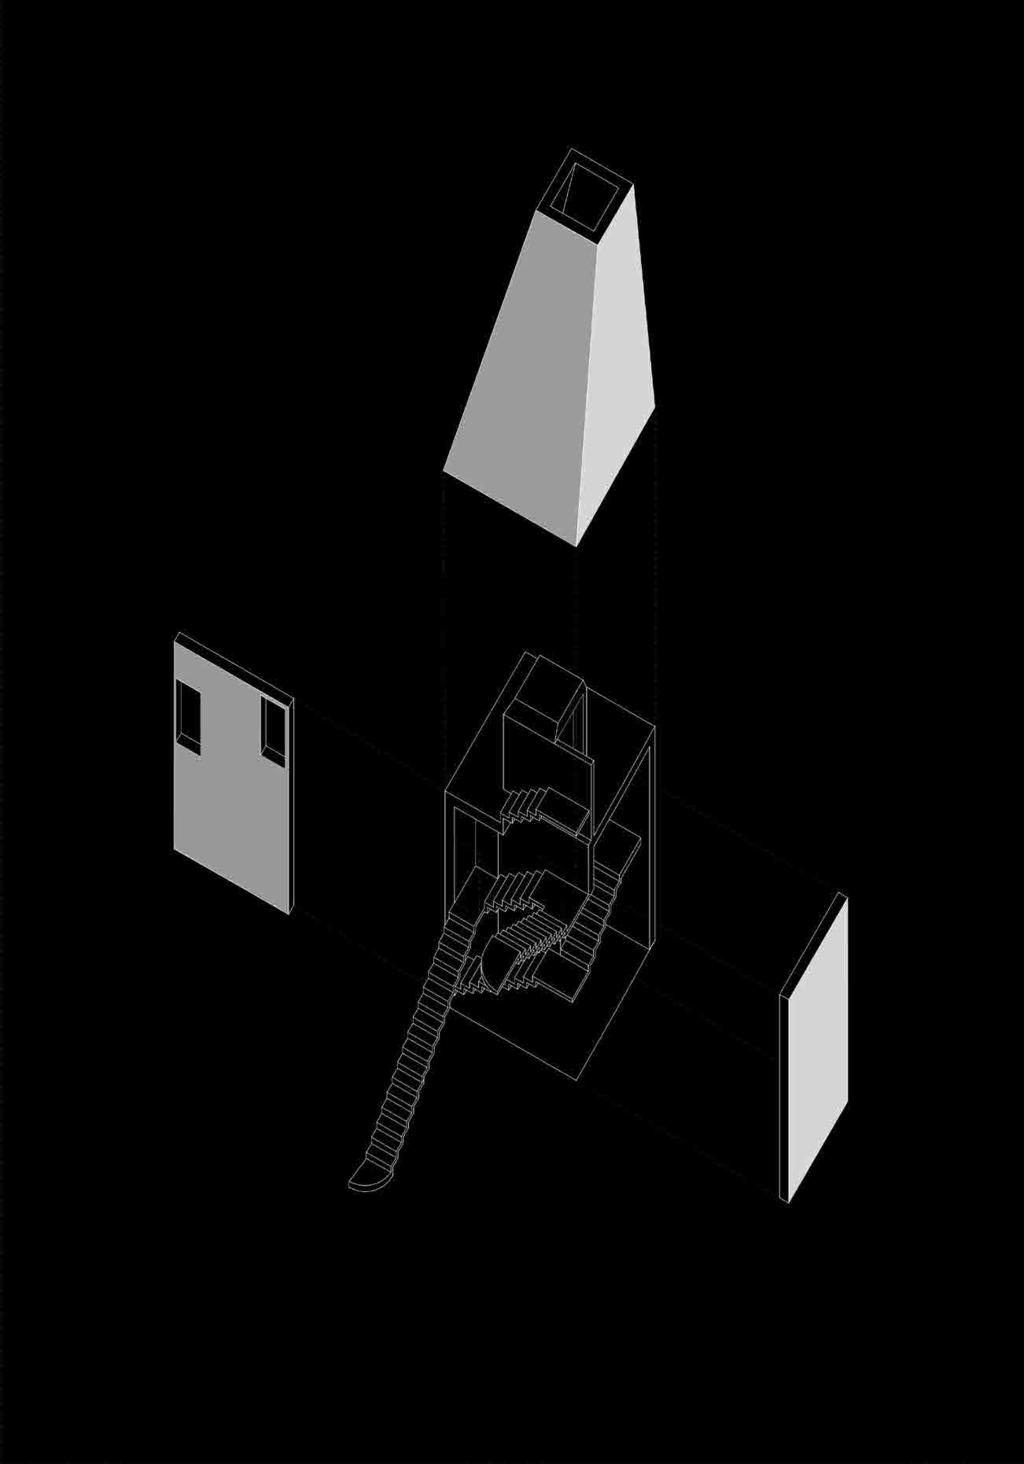 Tornet - Vertikal kommunikation Tornet rymmer två trapphus som går omlott. Det ena är inomhus det andra utomhus. Den inre, varma, trappan leder till våning två.